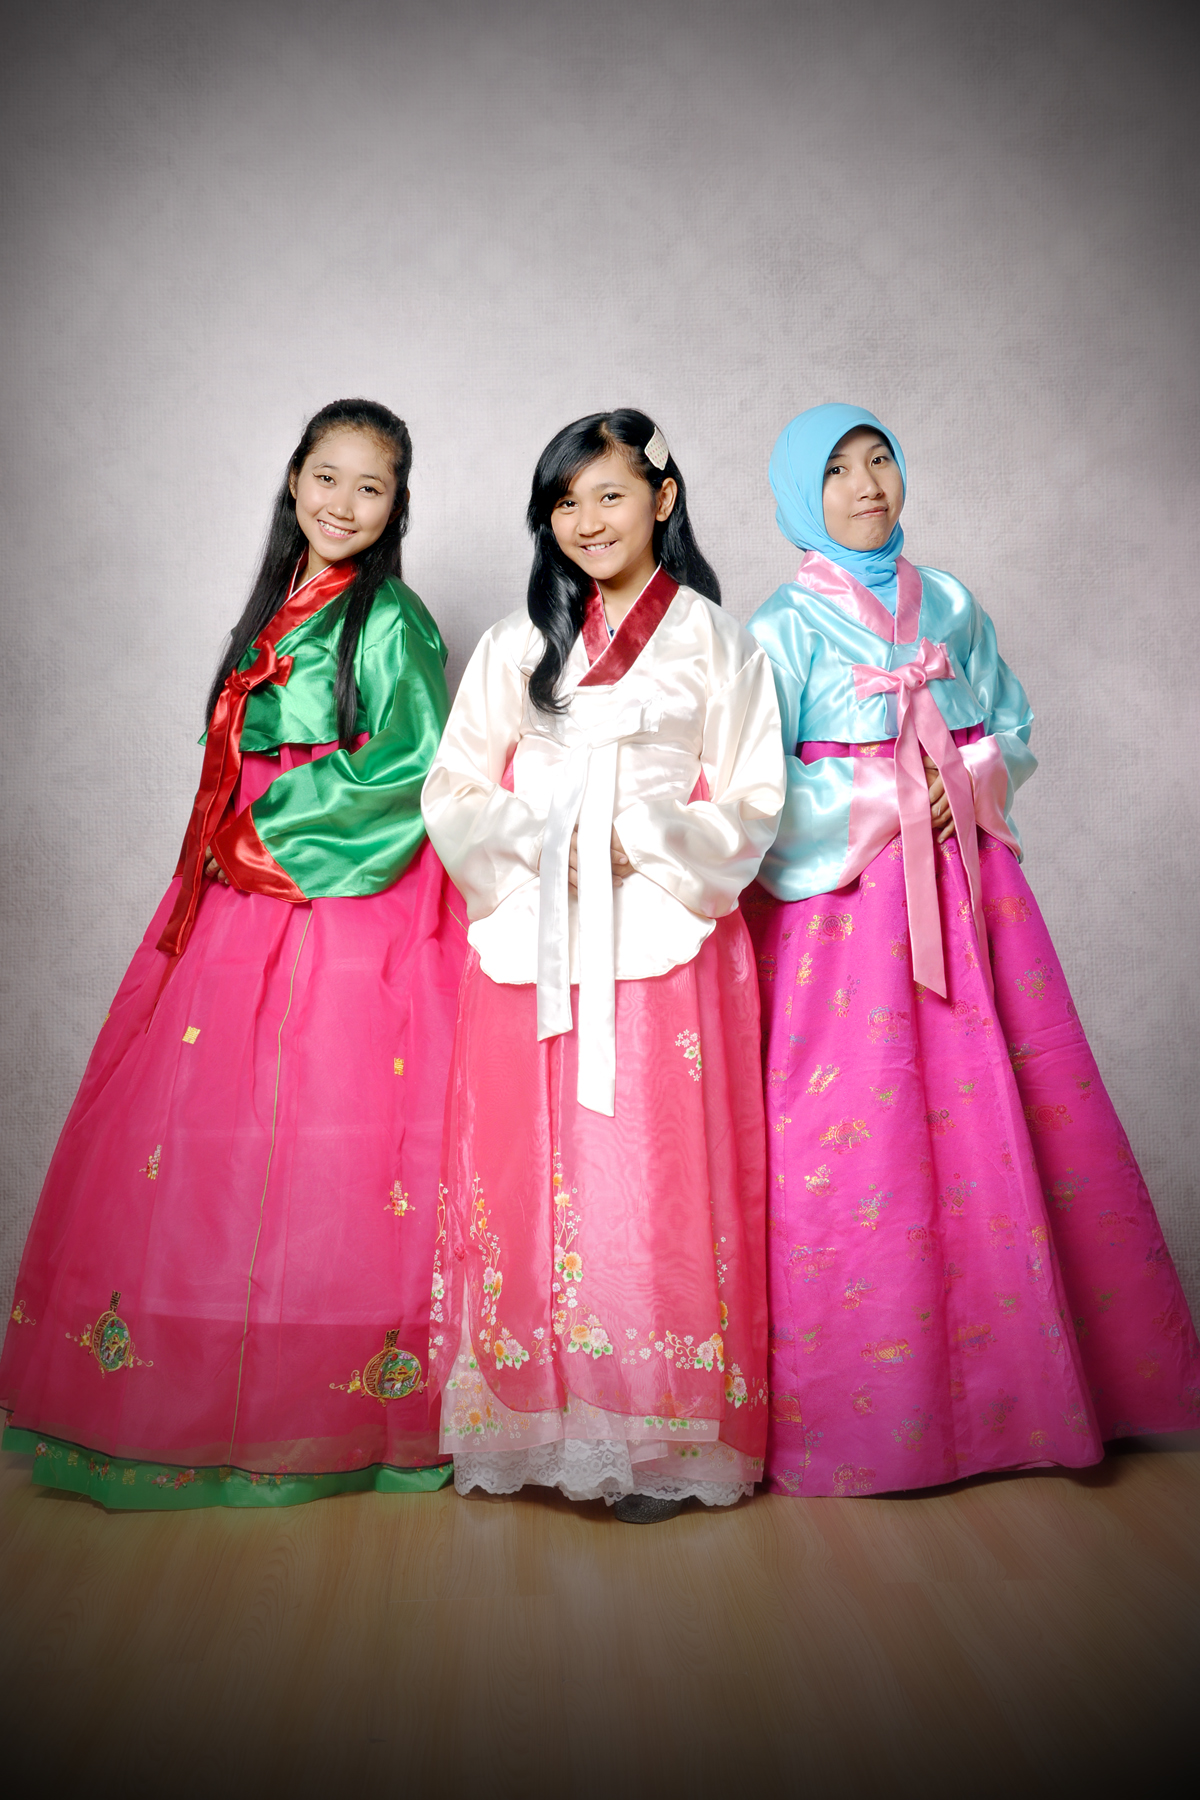  baju tradisional wanita 2014 jual baju tradisional korea 